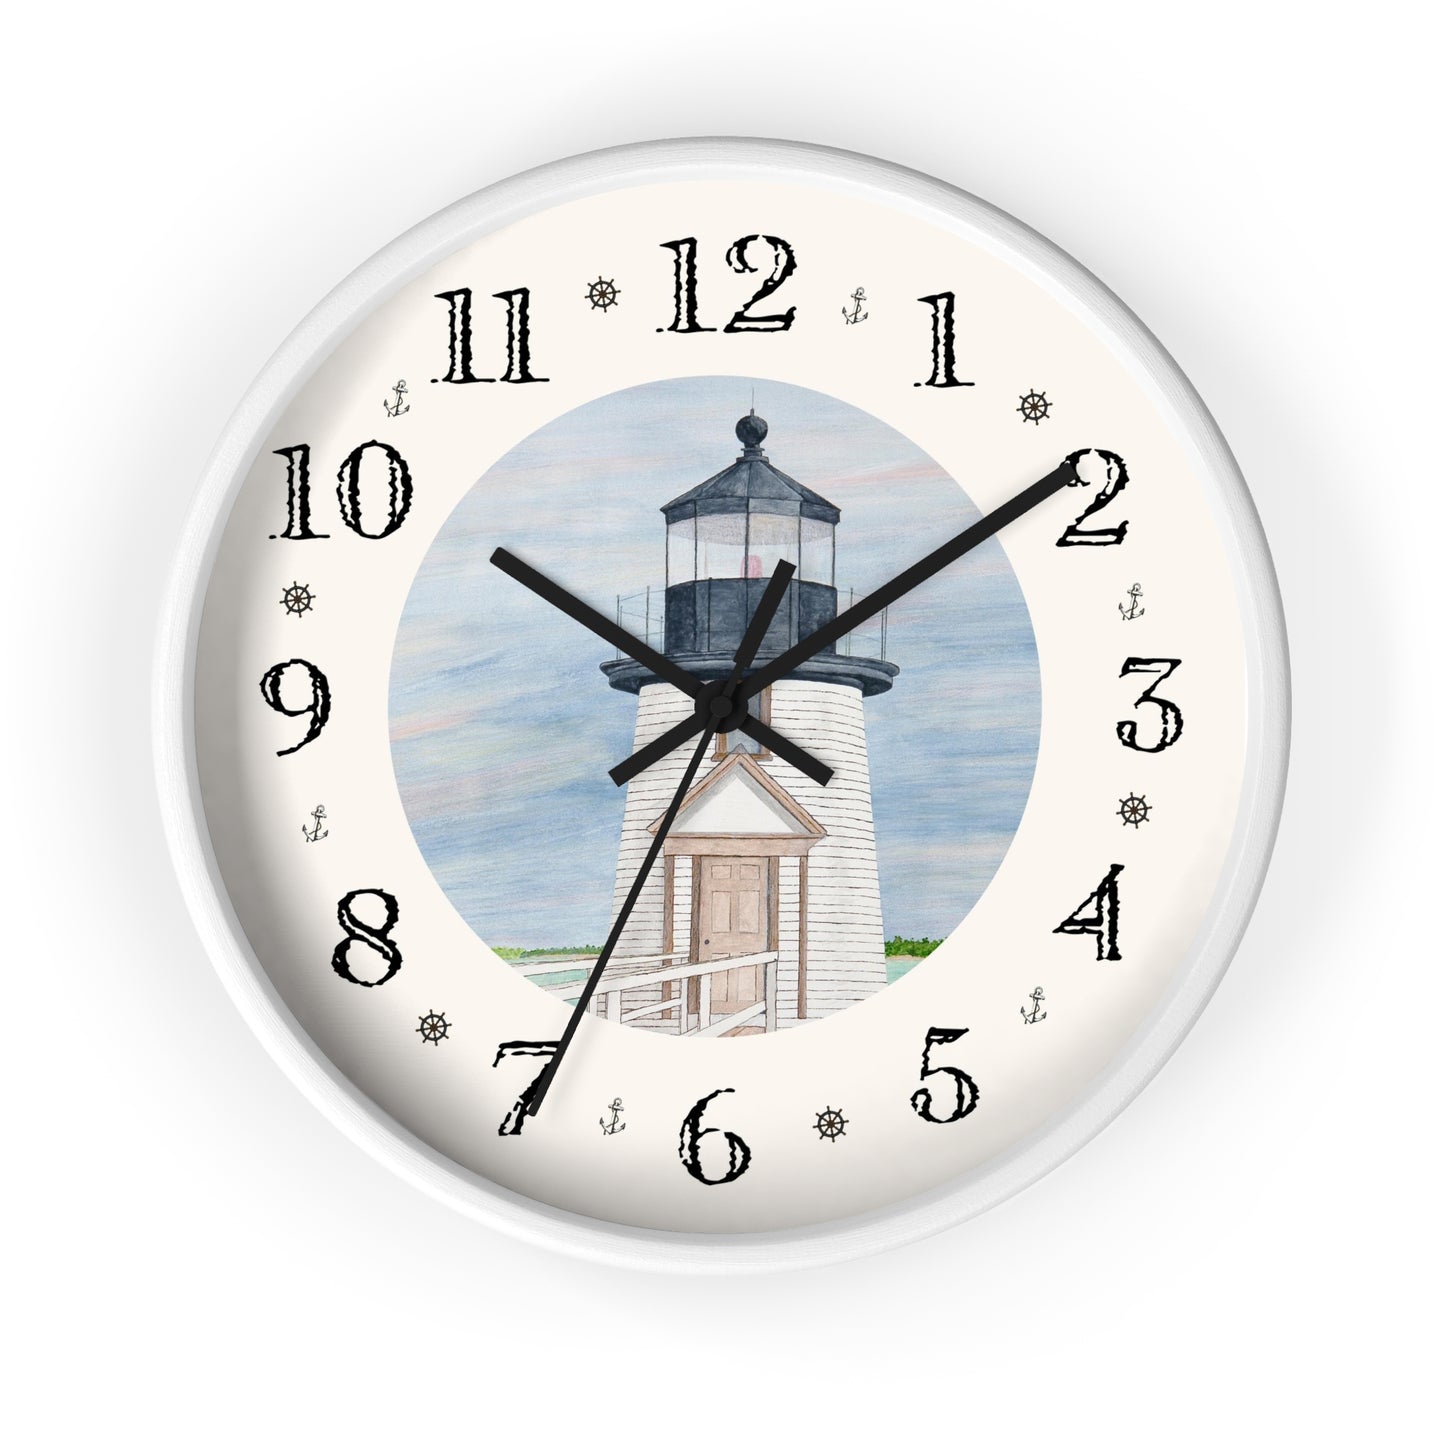 Evening Light At Brant Point Heirloom Designer Clock